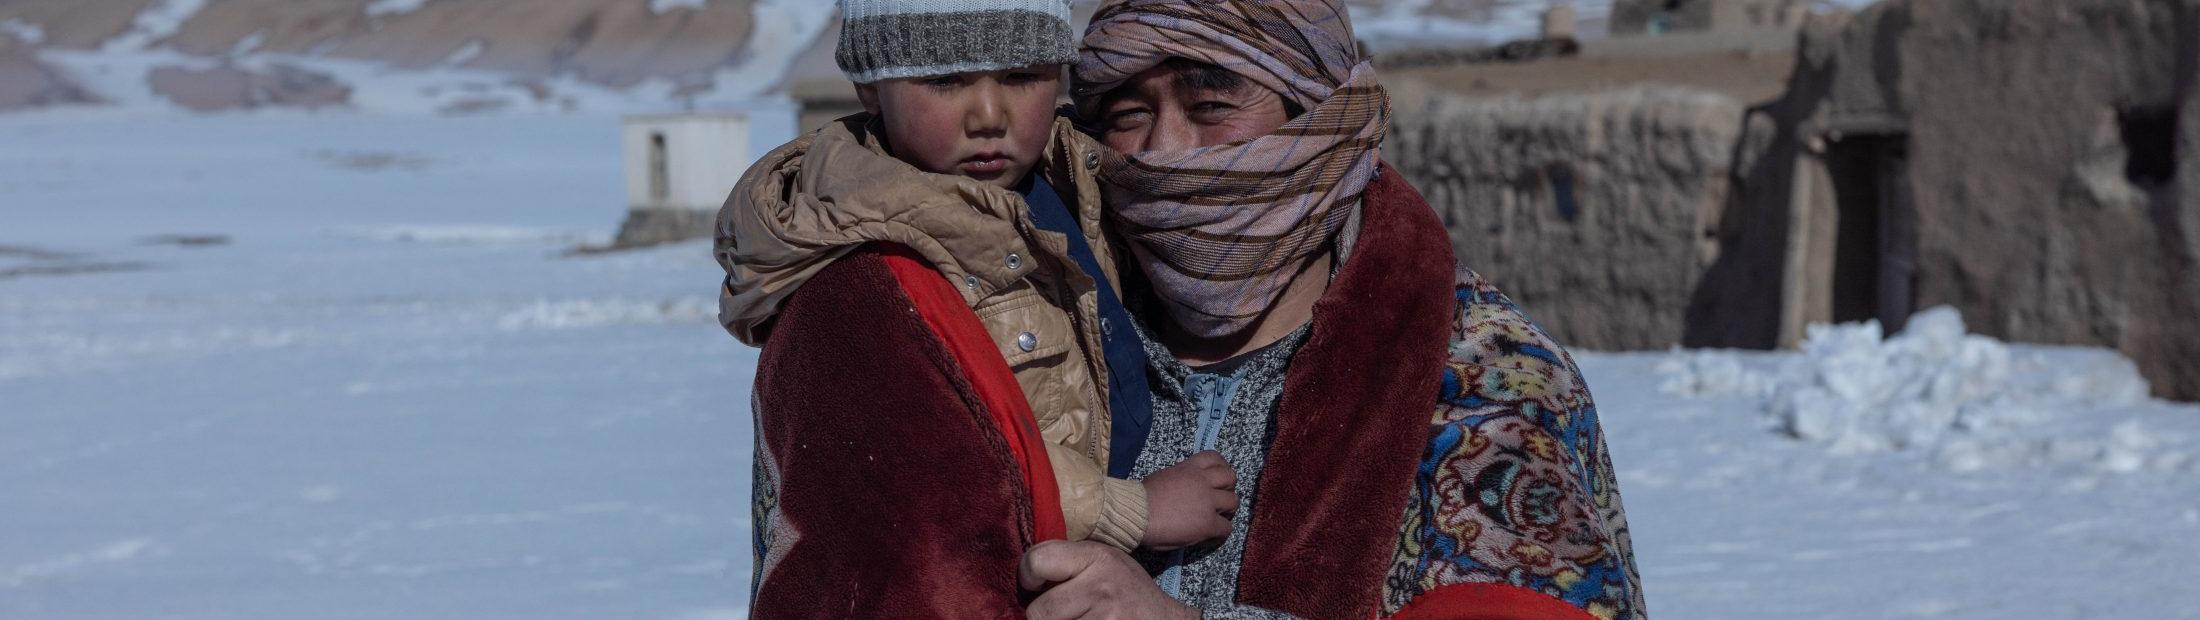 El frío de los refugiados es el más triste. Protégeles